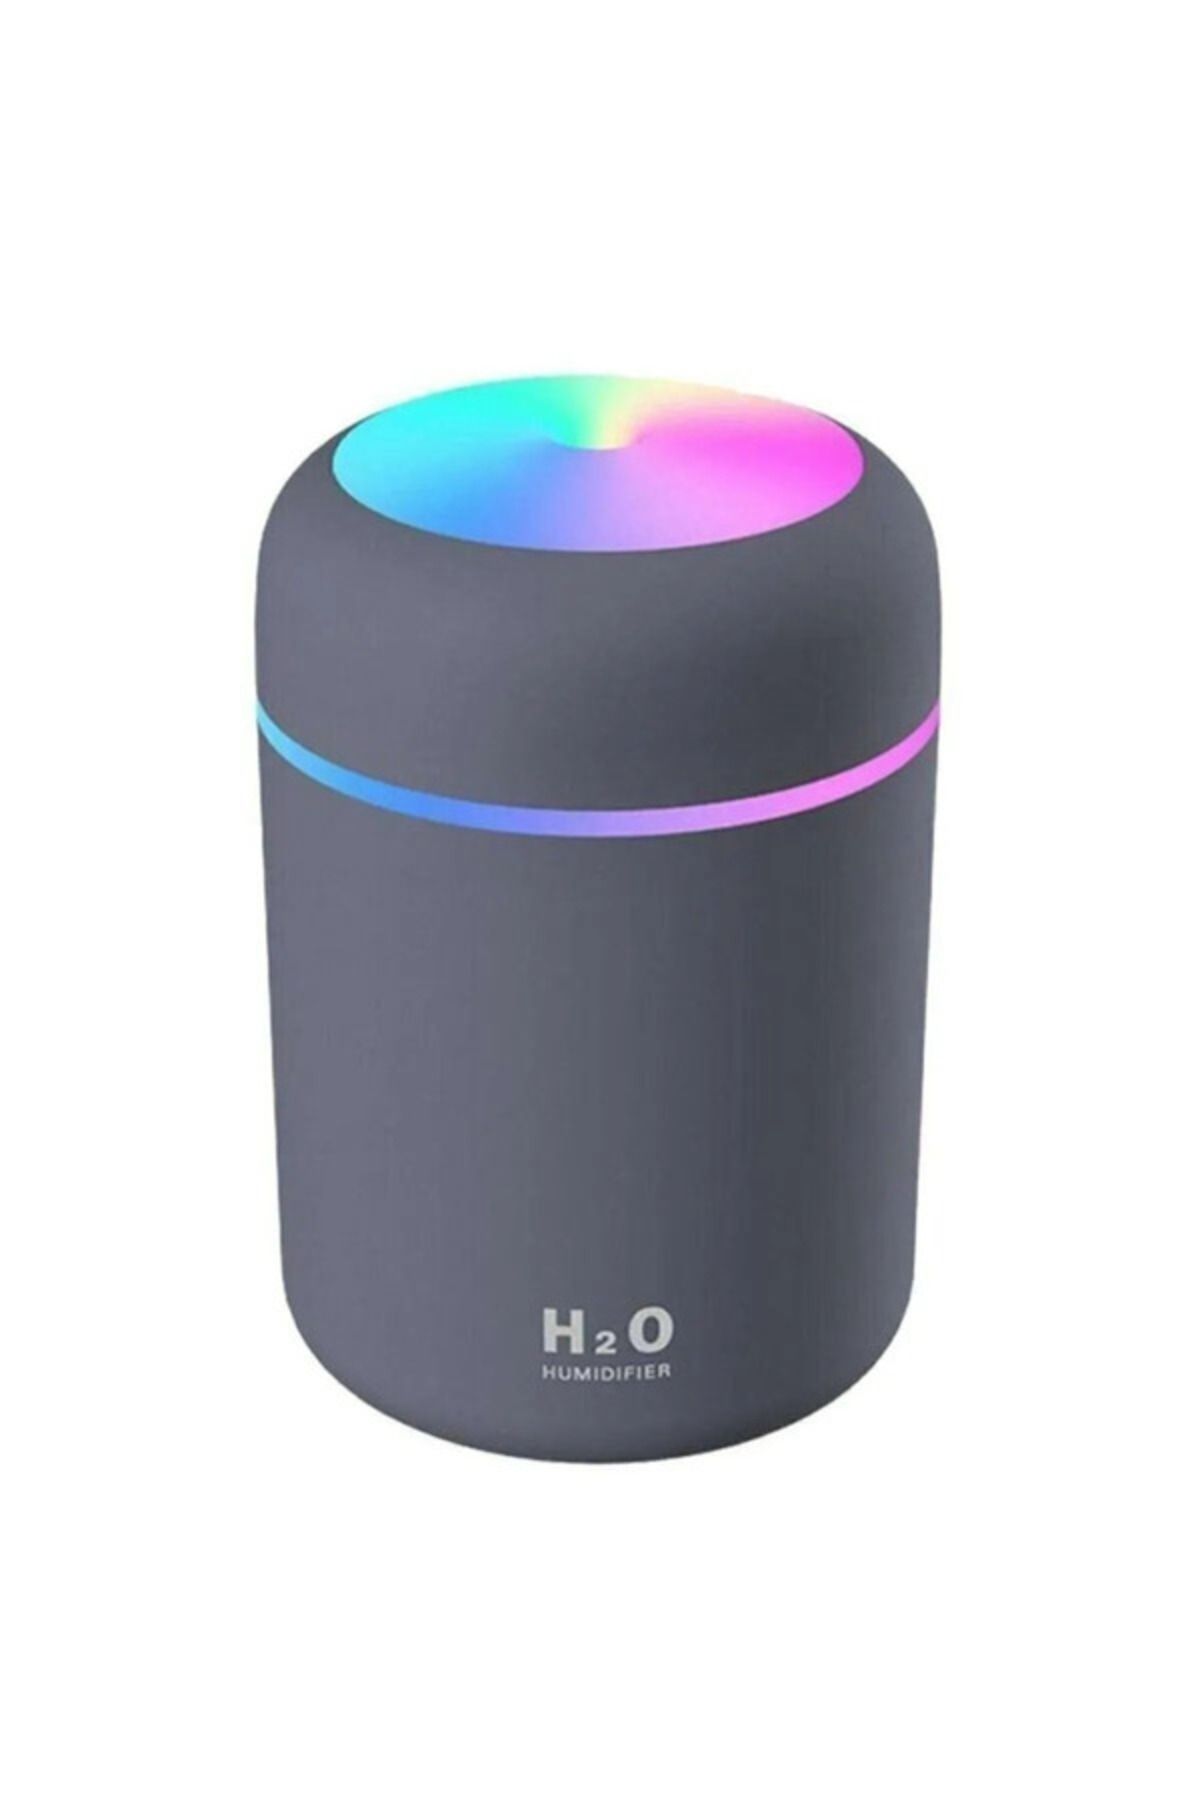 hotkey H2O Humidifier 300 Ml Ulrasonik Hava Nemlendirici Buhar Makinesi Ve Aroma Difüzörü